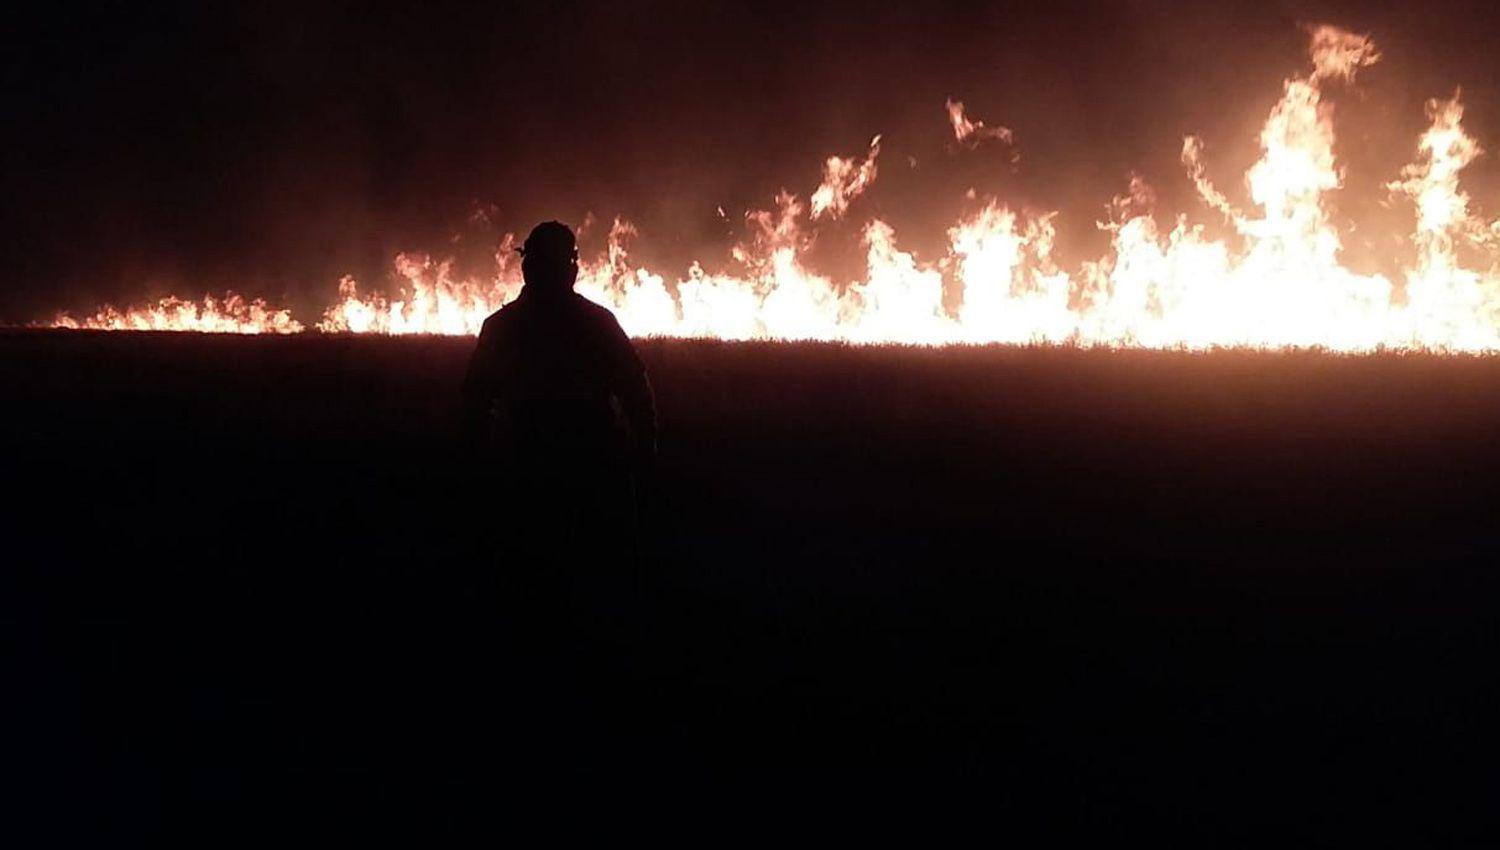 Incendios forestales- ldquoSantiago es un papel donde toda quema representa un gran riesgordquo